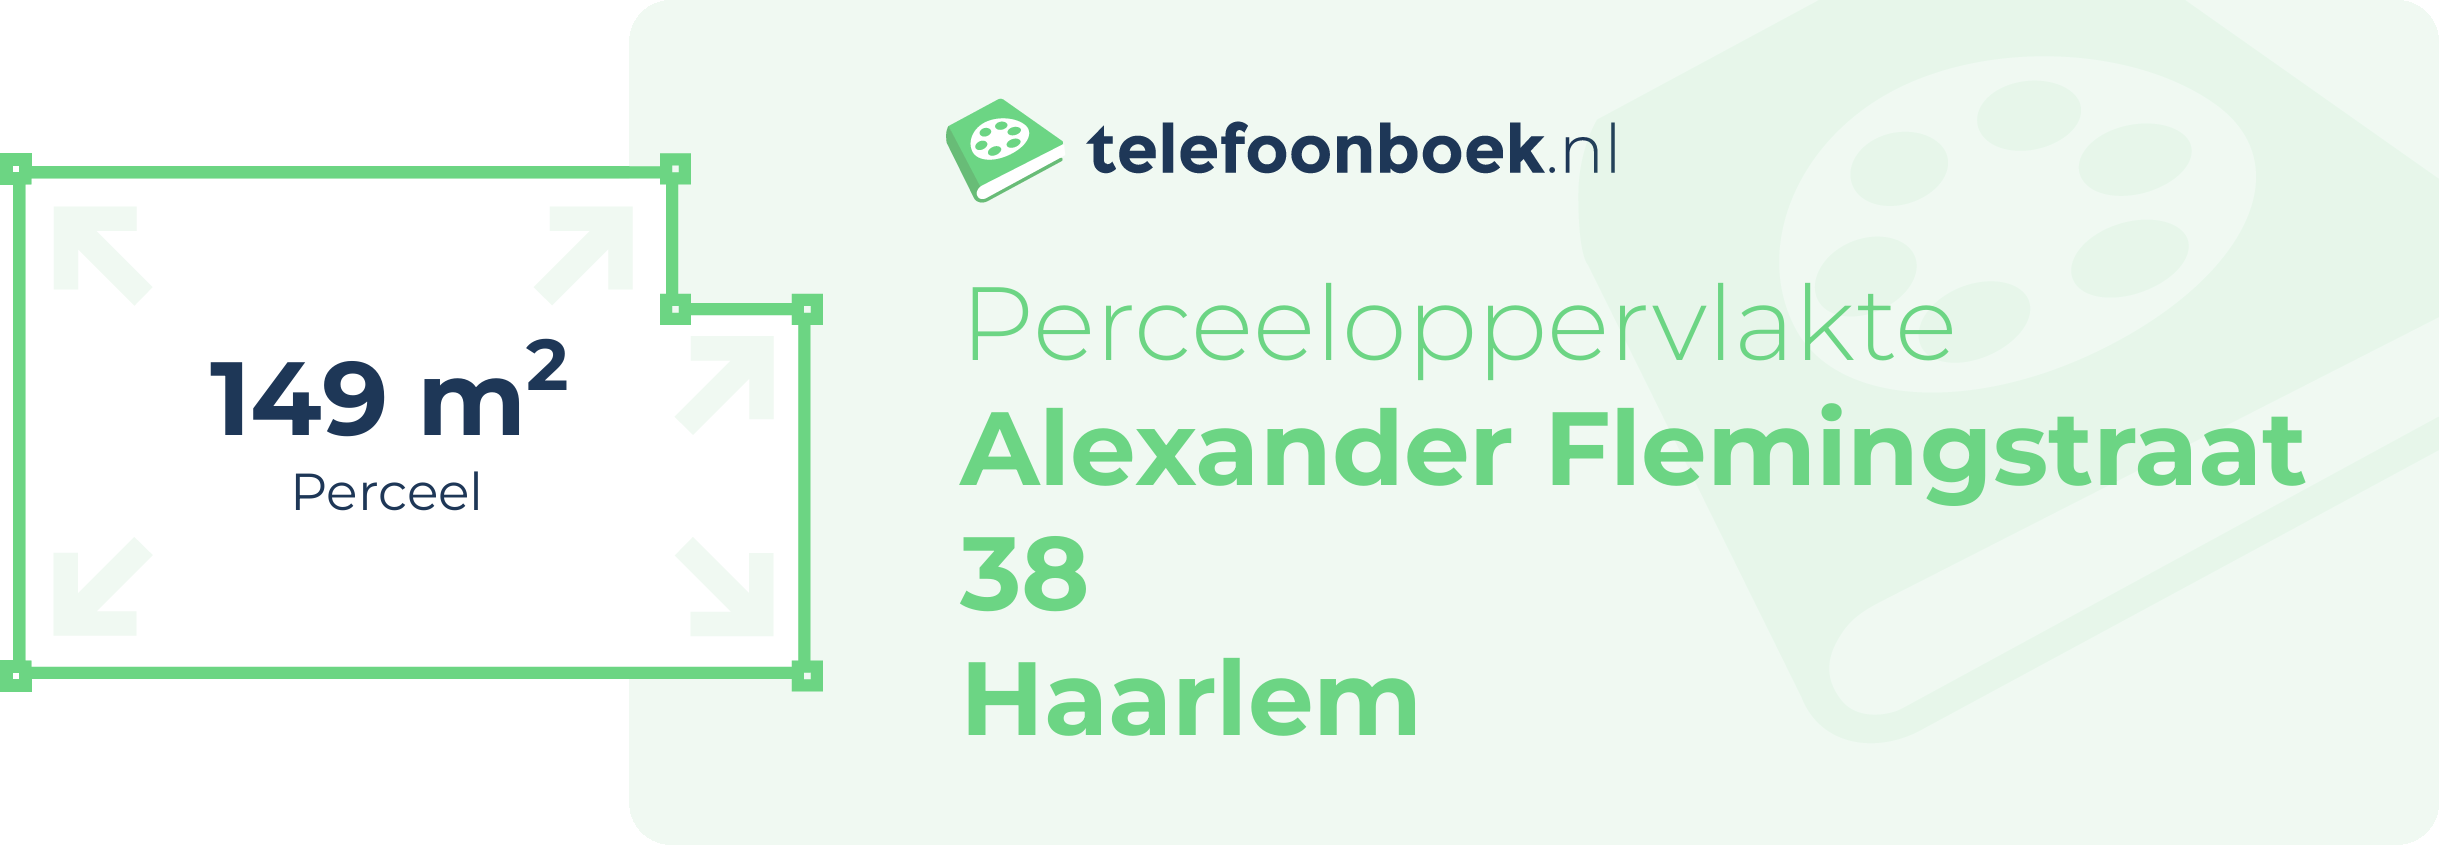 Perceeloppervlakte Alexander Flemingstraat 38 Haarlem